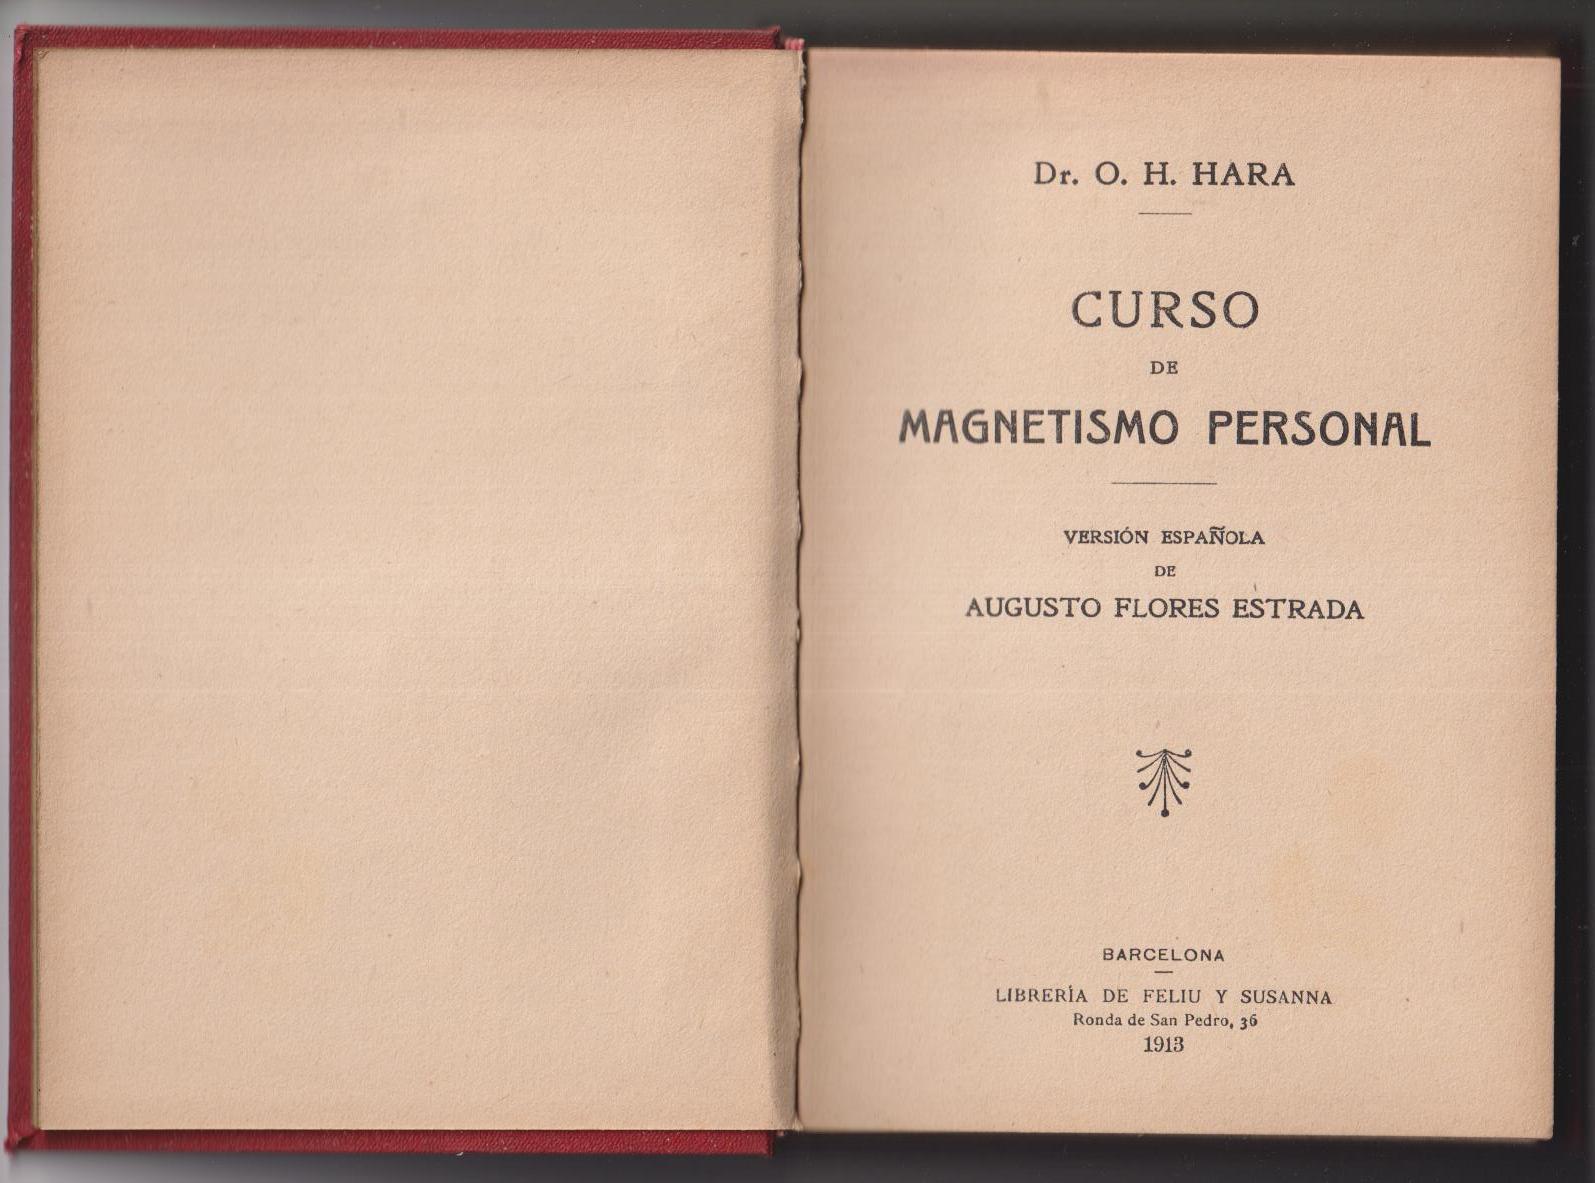 Dr. O. H. Hara. Curso de magnetismo personal. Librería de Feliu y Susanna 1913